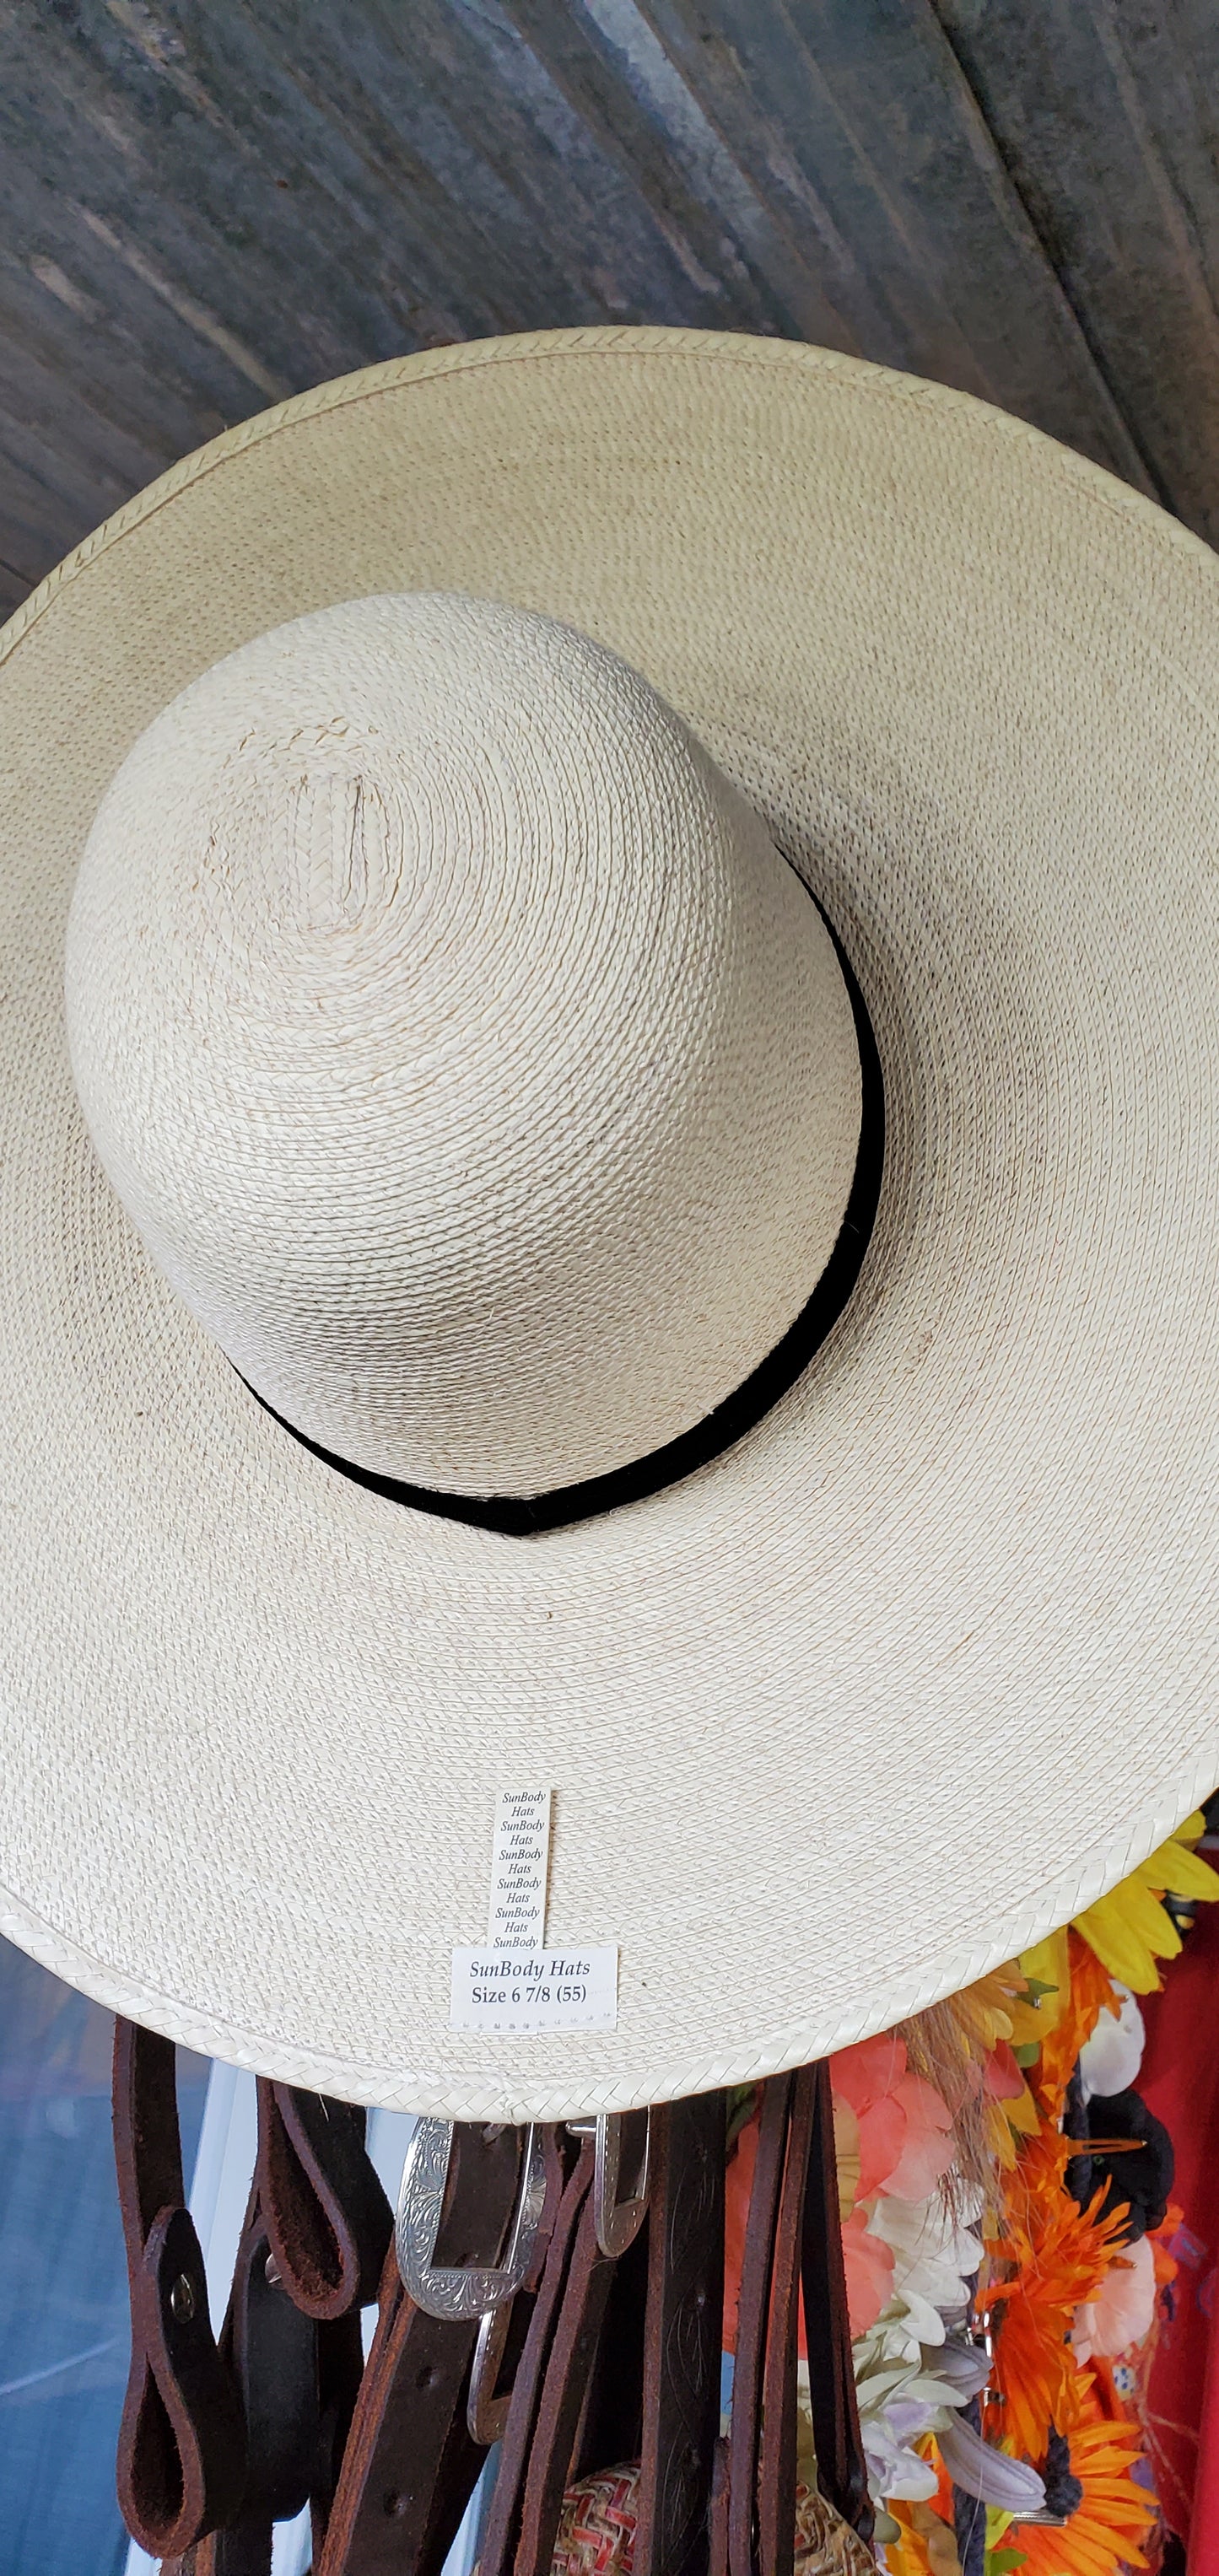 Sunbody Vaquera Hat